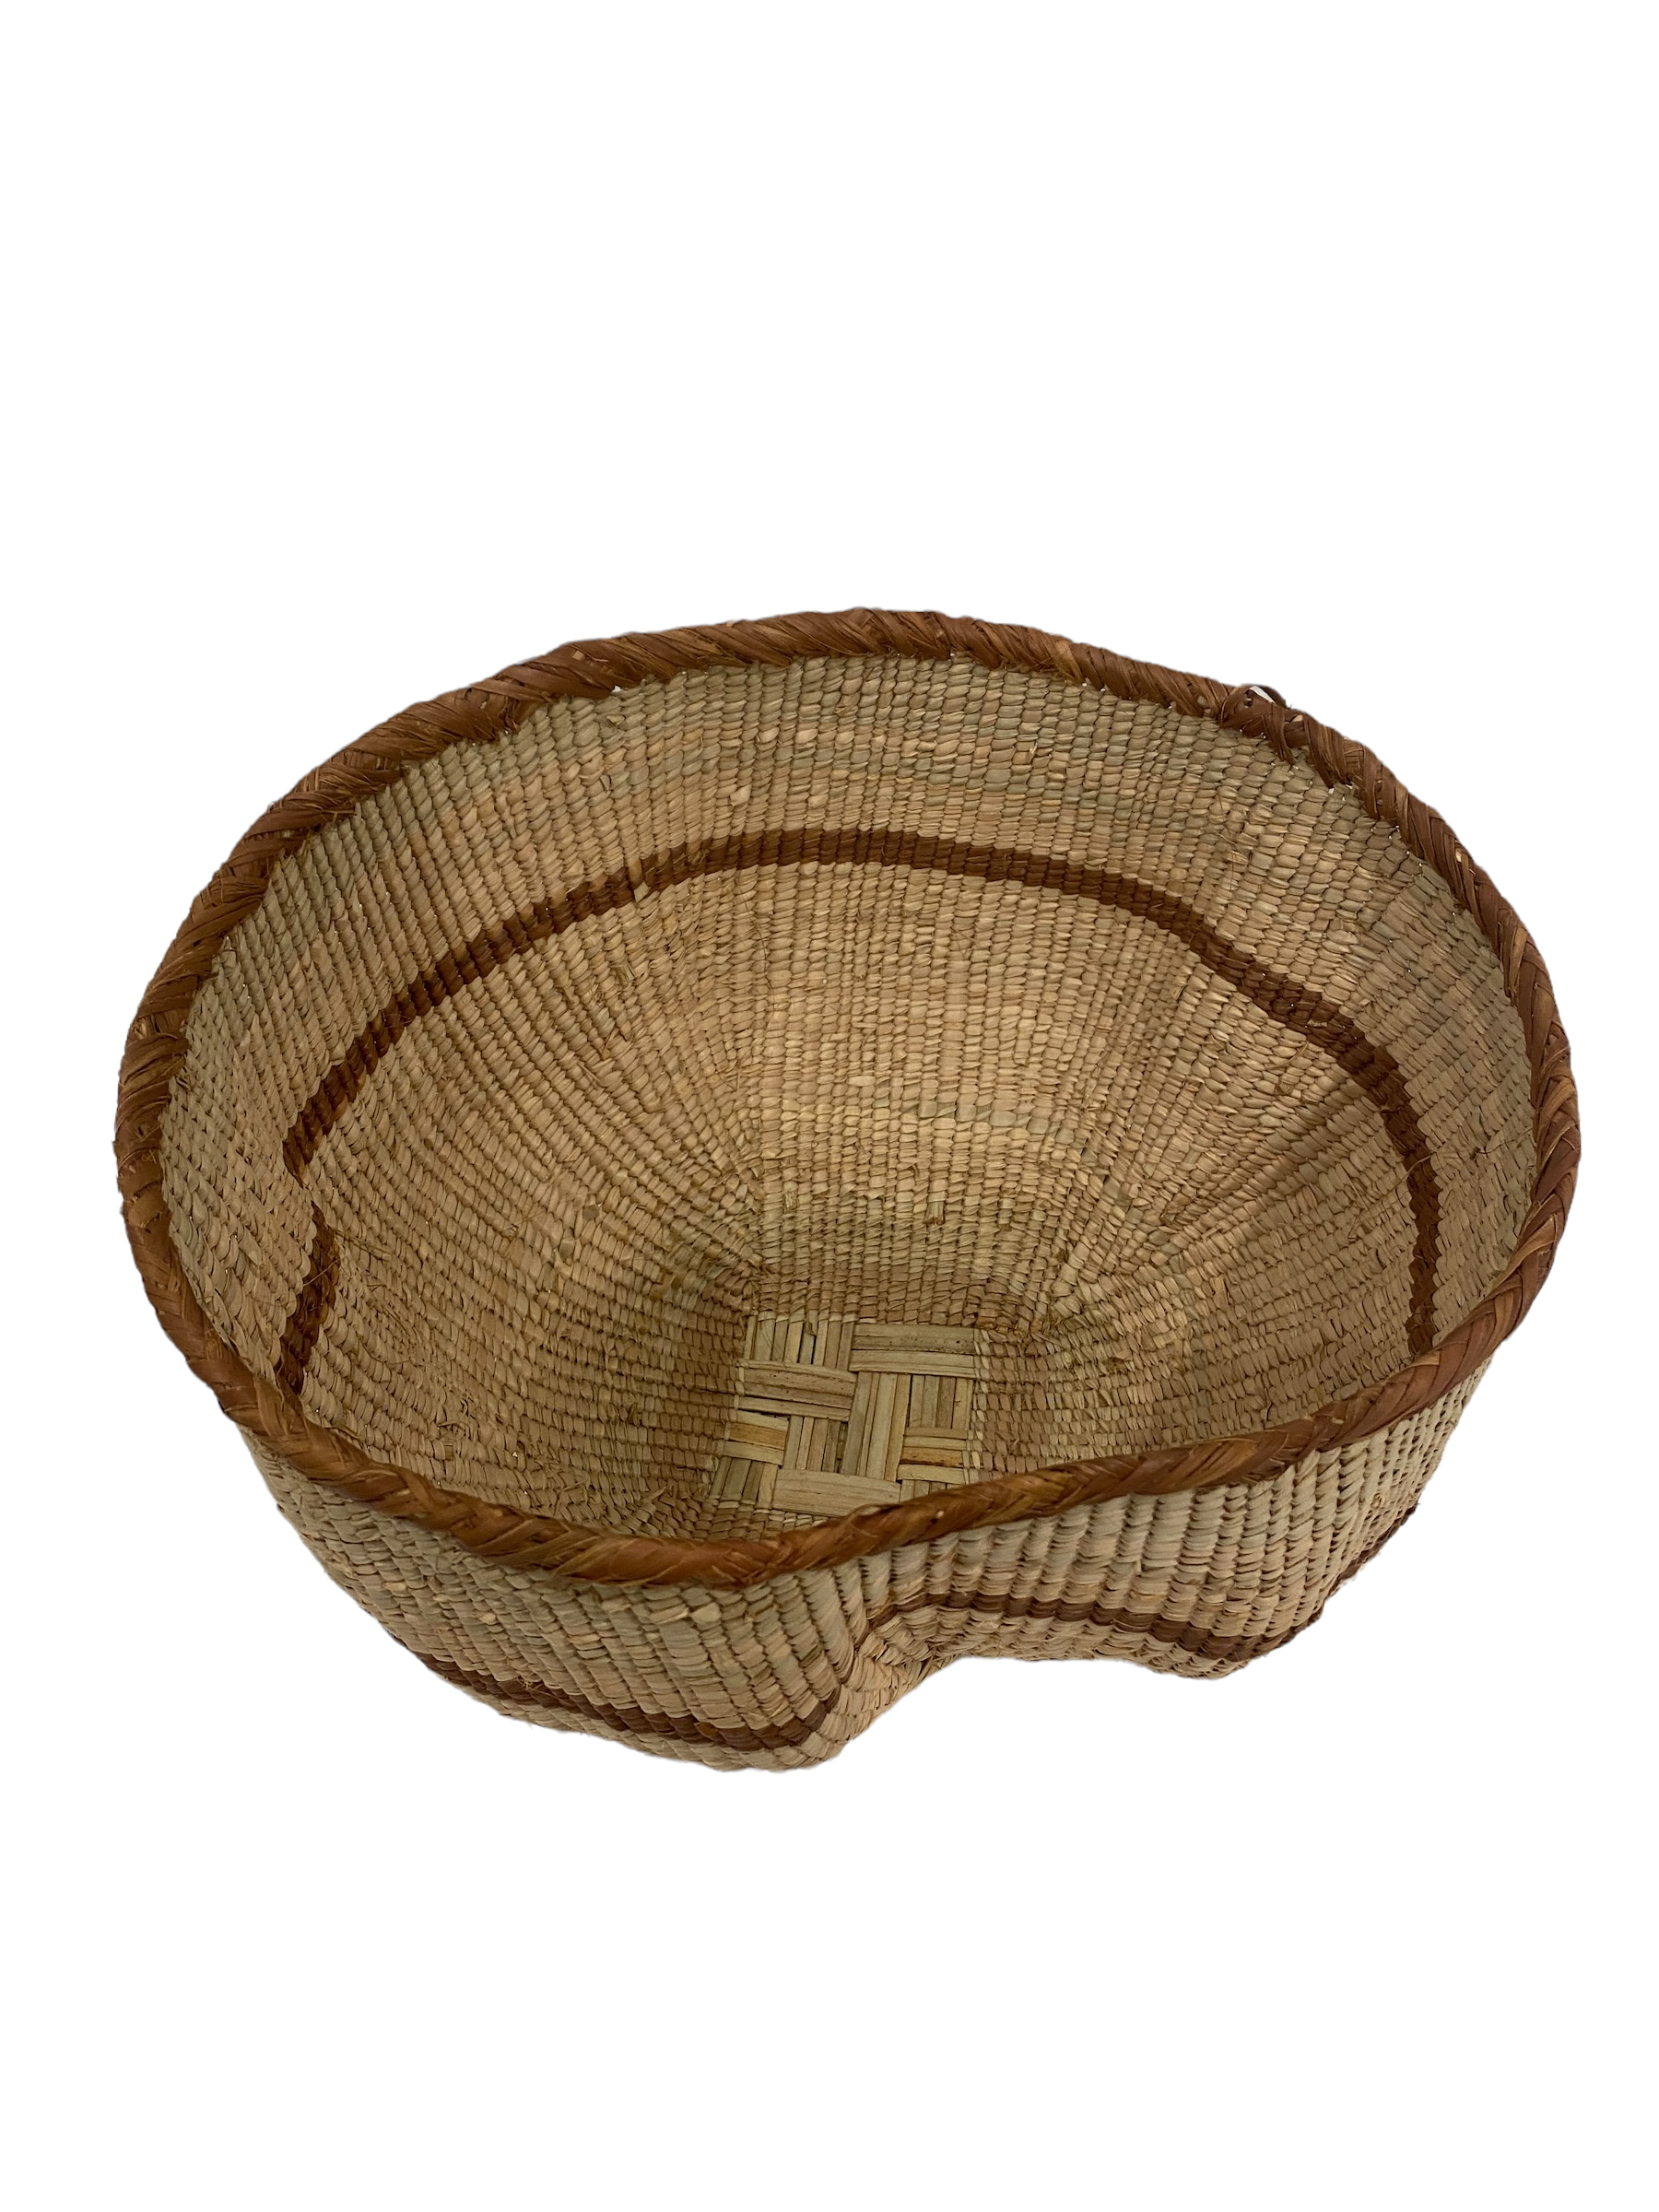 Tonga Basket Pot (6802)